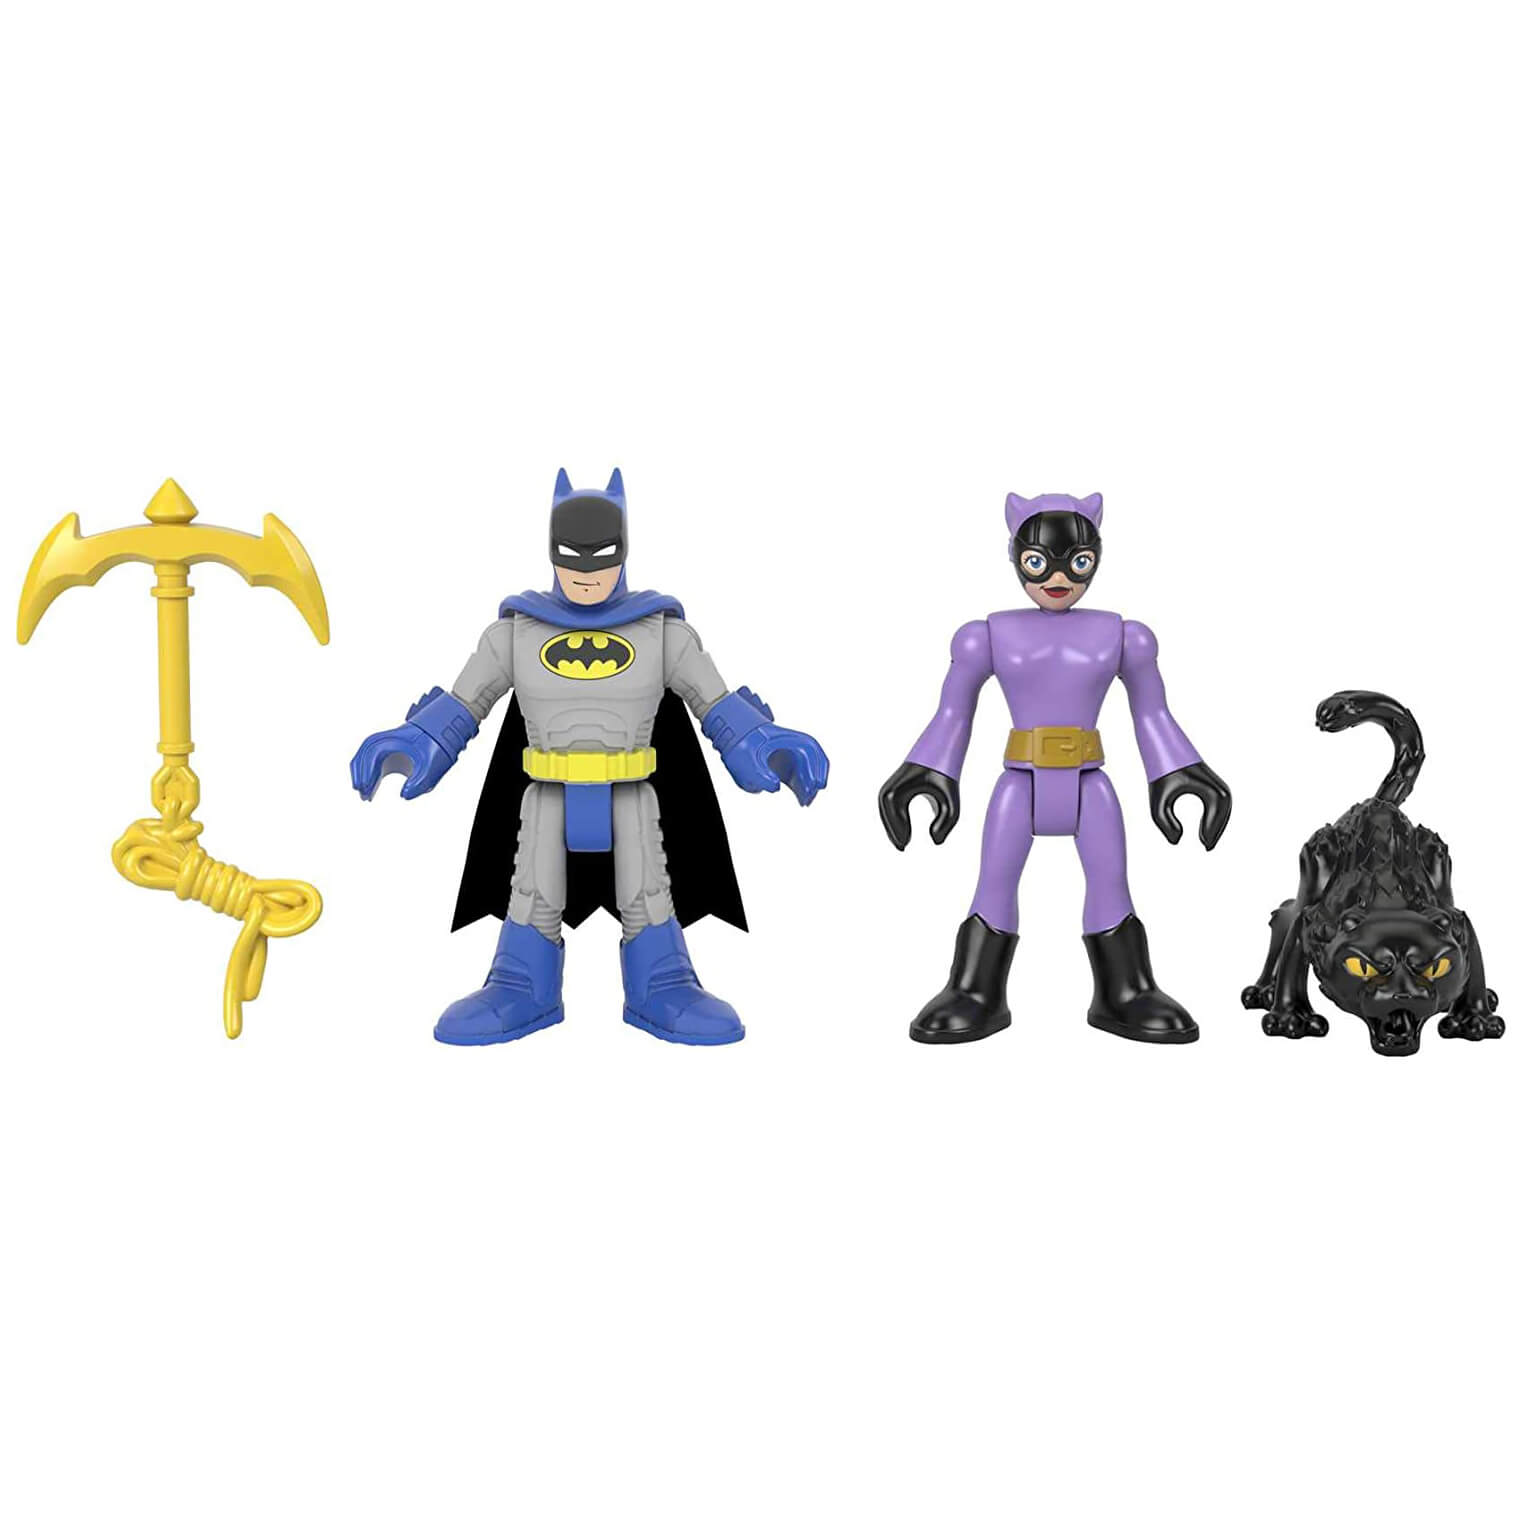 DC Super Friends Imaginext Batman & Catwomen Figures